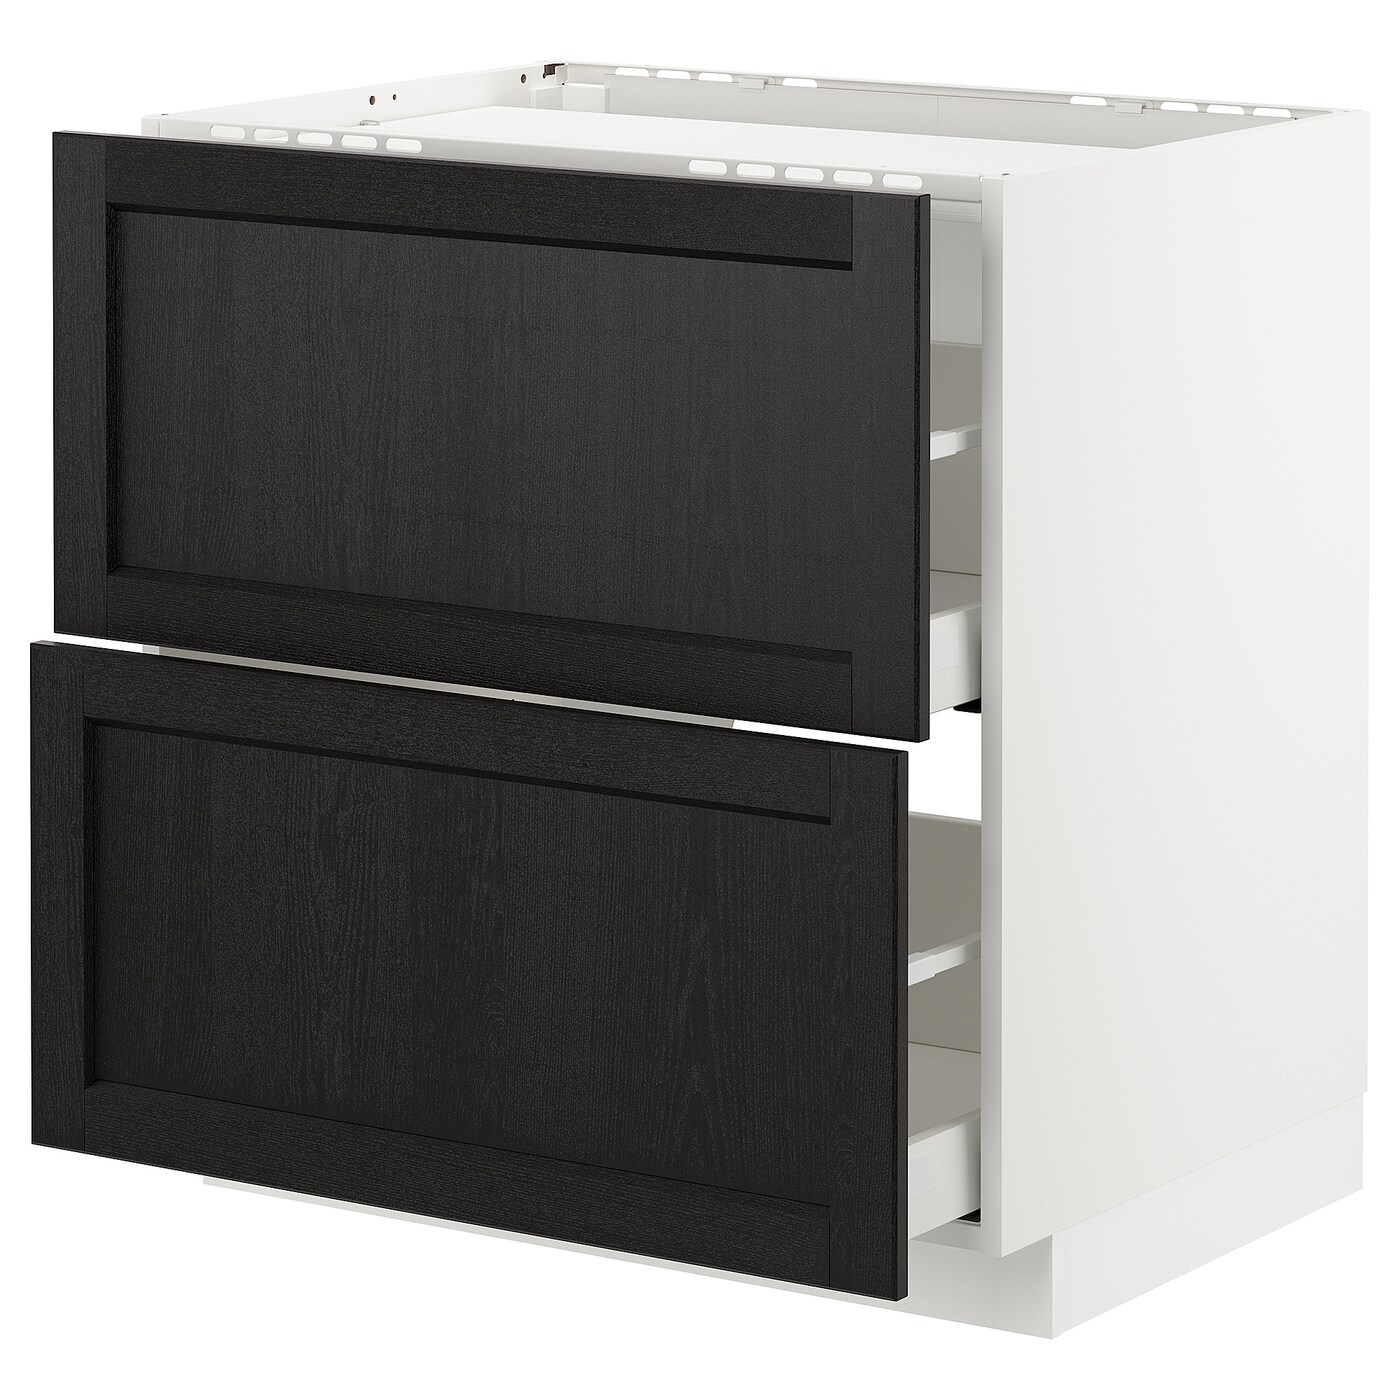 Напольный кухонный шкаф  - IKEA METOD MAXIMERA, 88x61,8x60см, белый/черный, МЕТОД МАКСИМЕРА ИКЕА